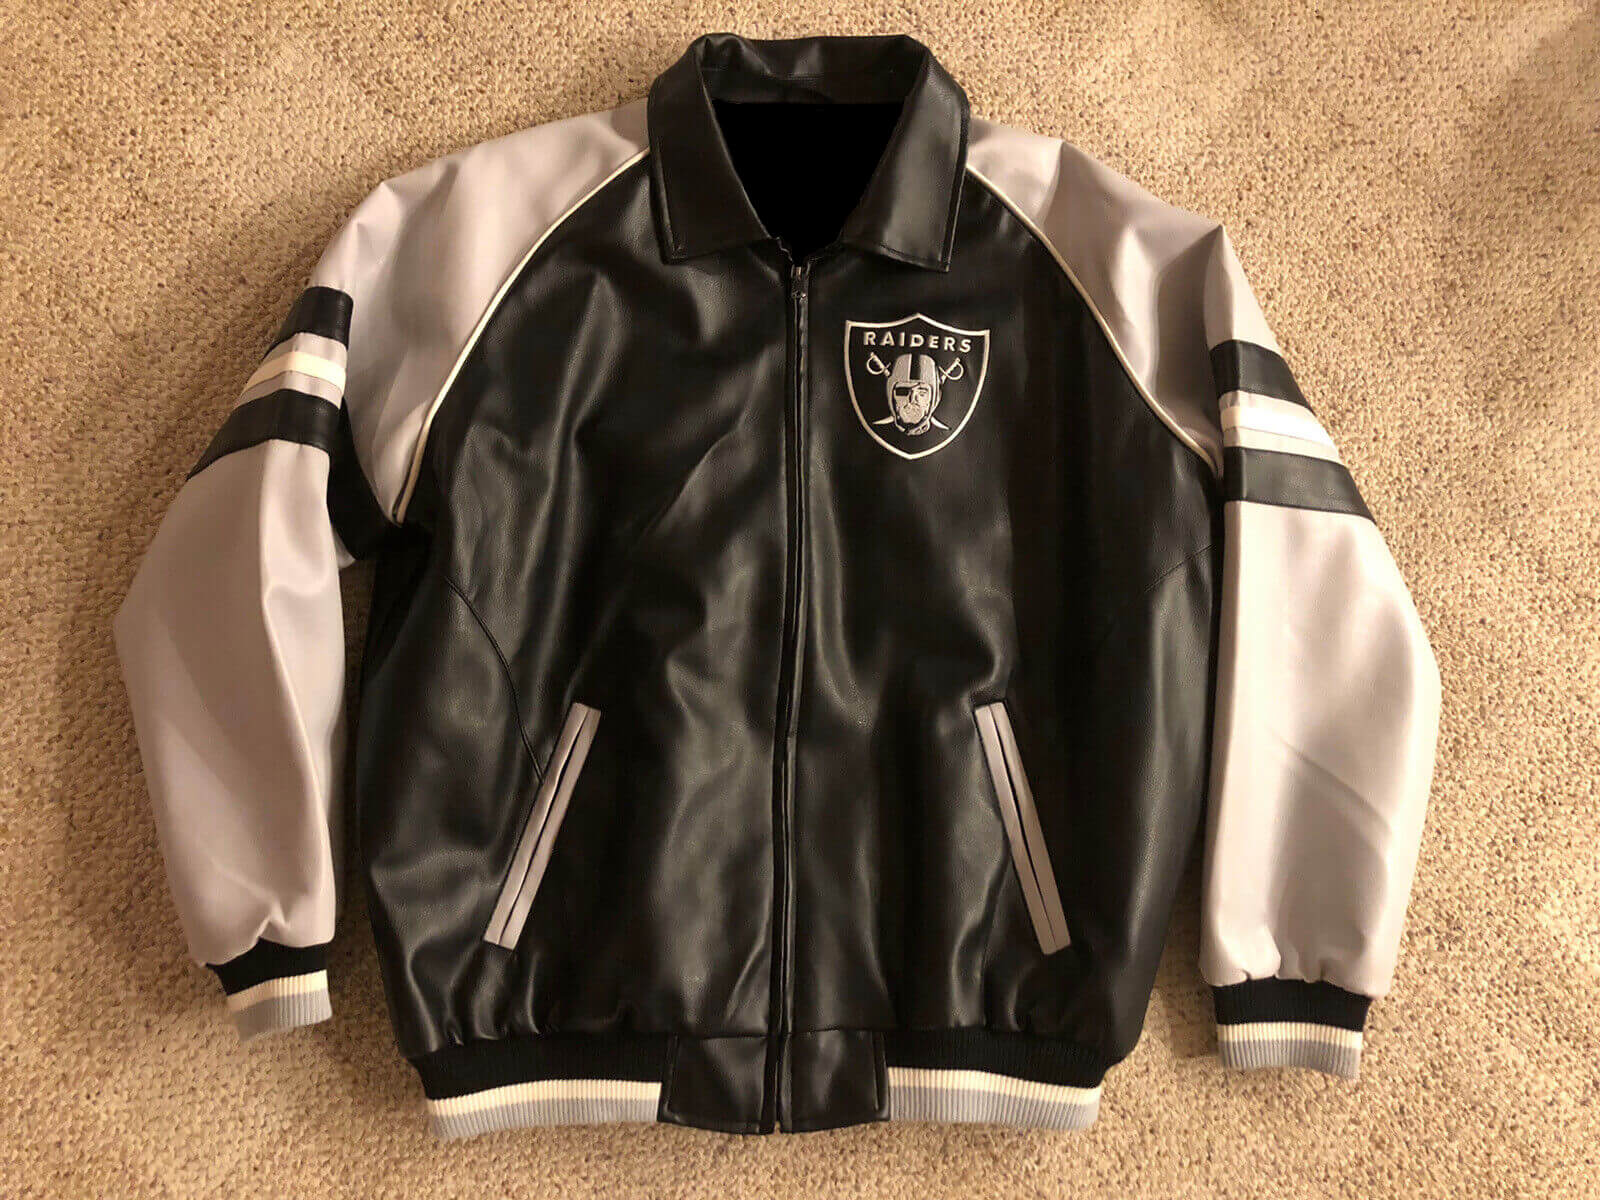 Vintage G-III Oakland Raiders Football Leather Jacket - Maker of